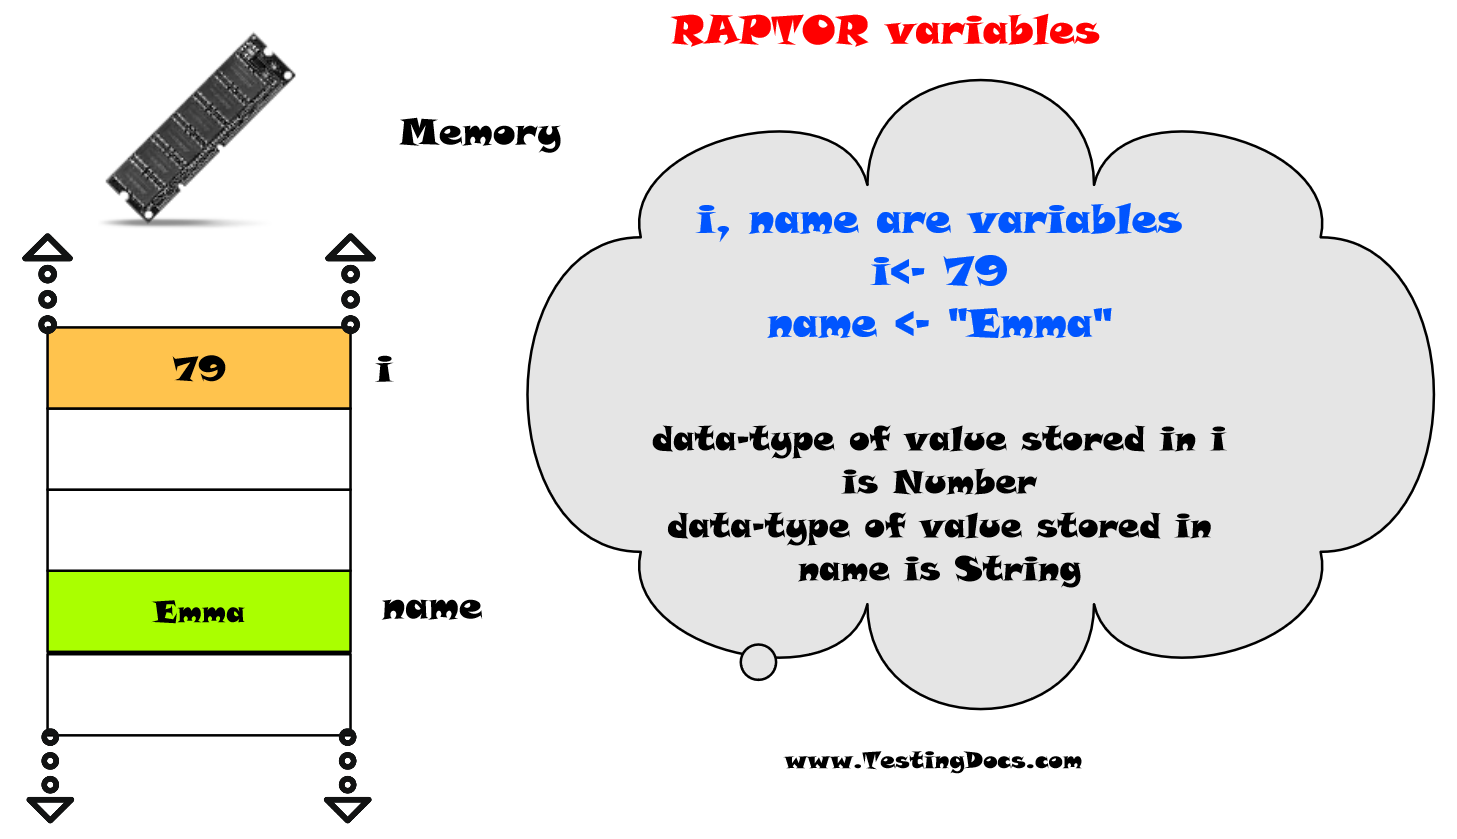 Raptor variables flowchart